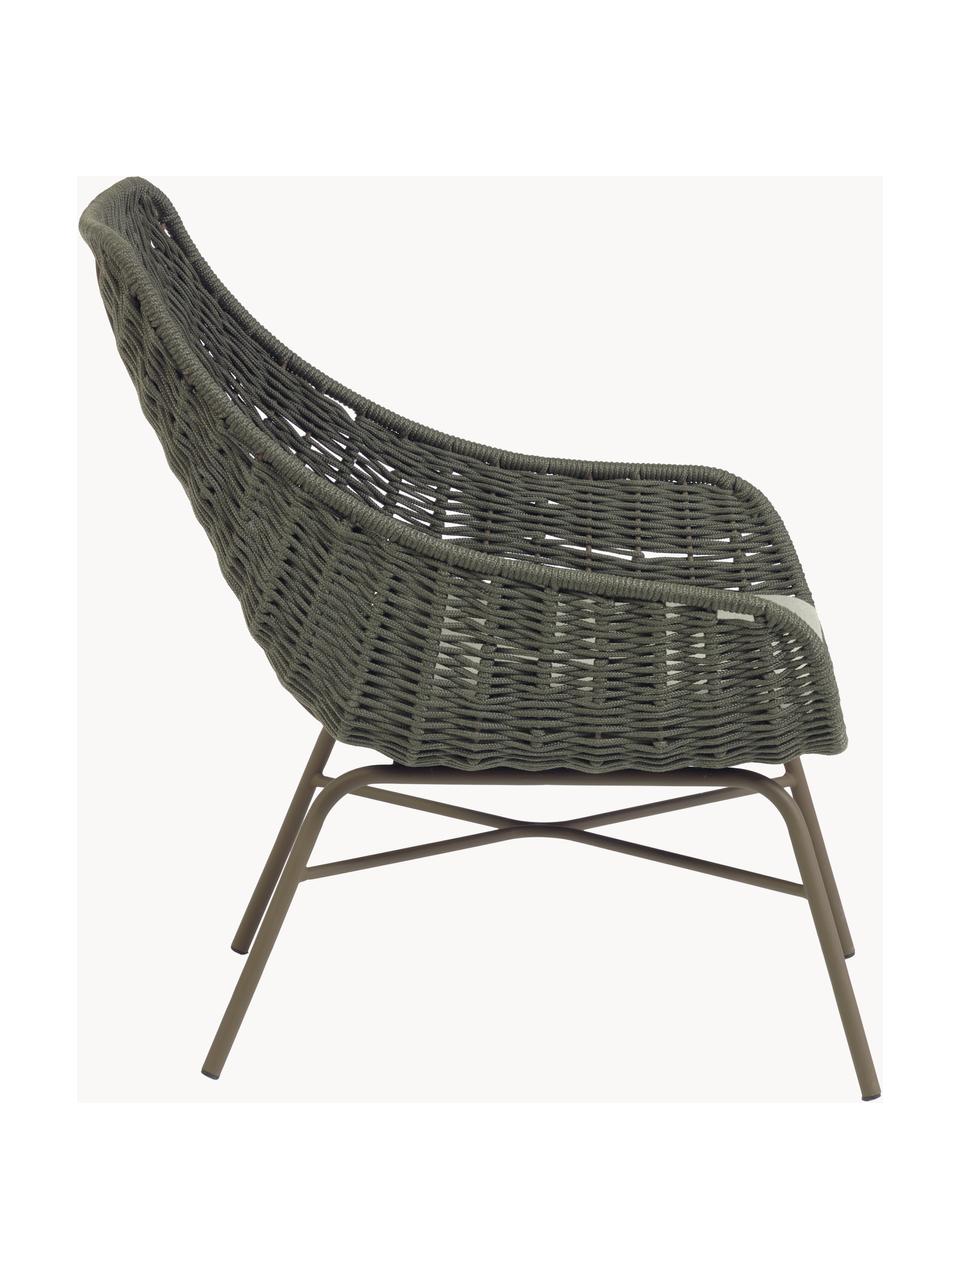 Garten-Loungesessel Abeli, Sitzschale: Seil, gefärbt, Gestell: Metall, verzinkt und lack, Bezug: Stoff, Webstoff Hellbeige, Olivgrün, B 68 x T 67 cm